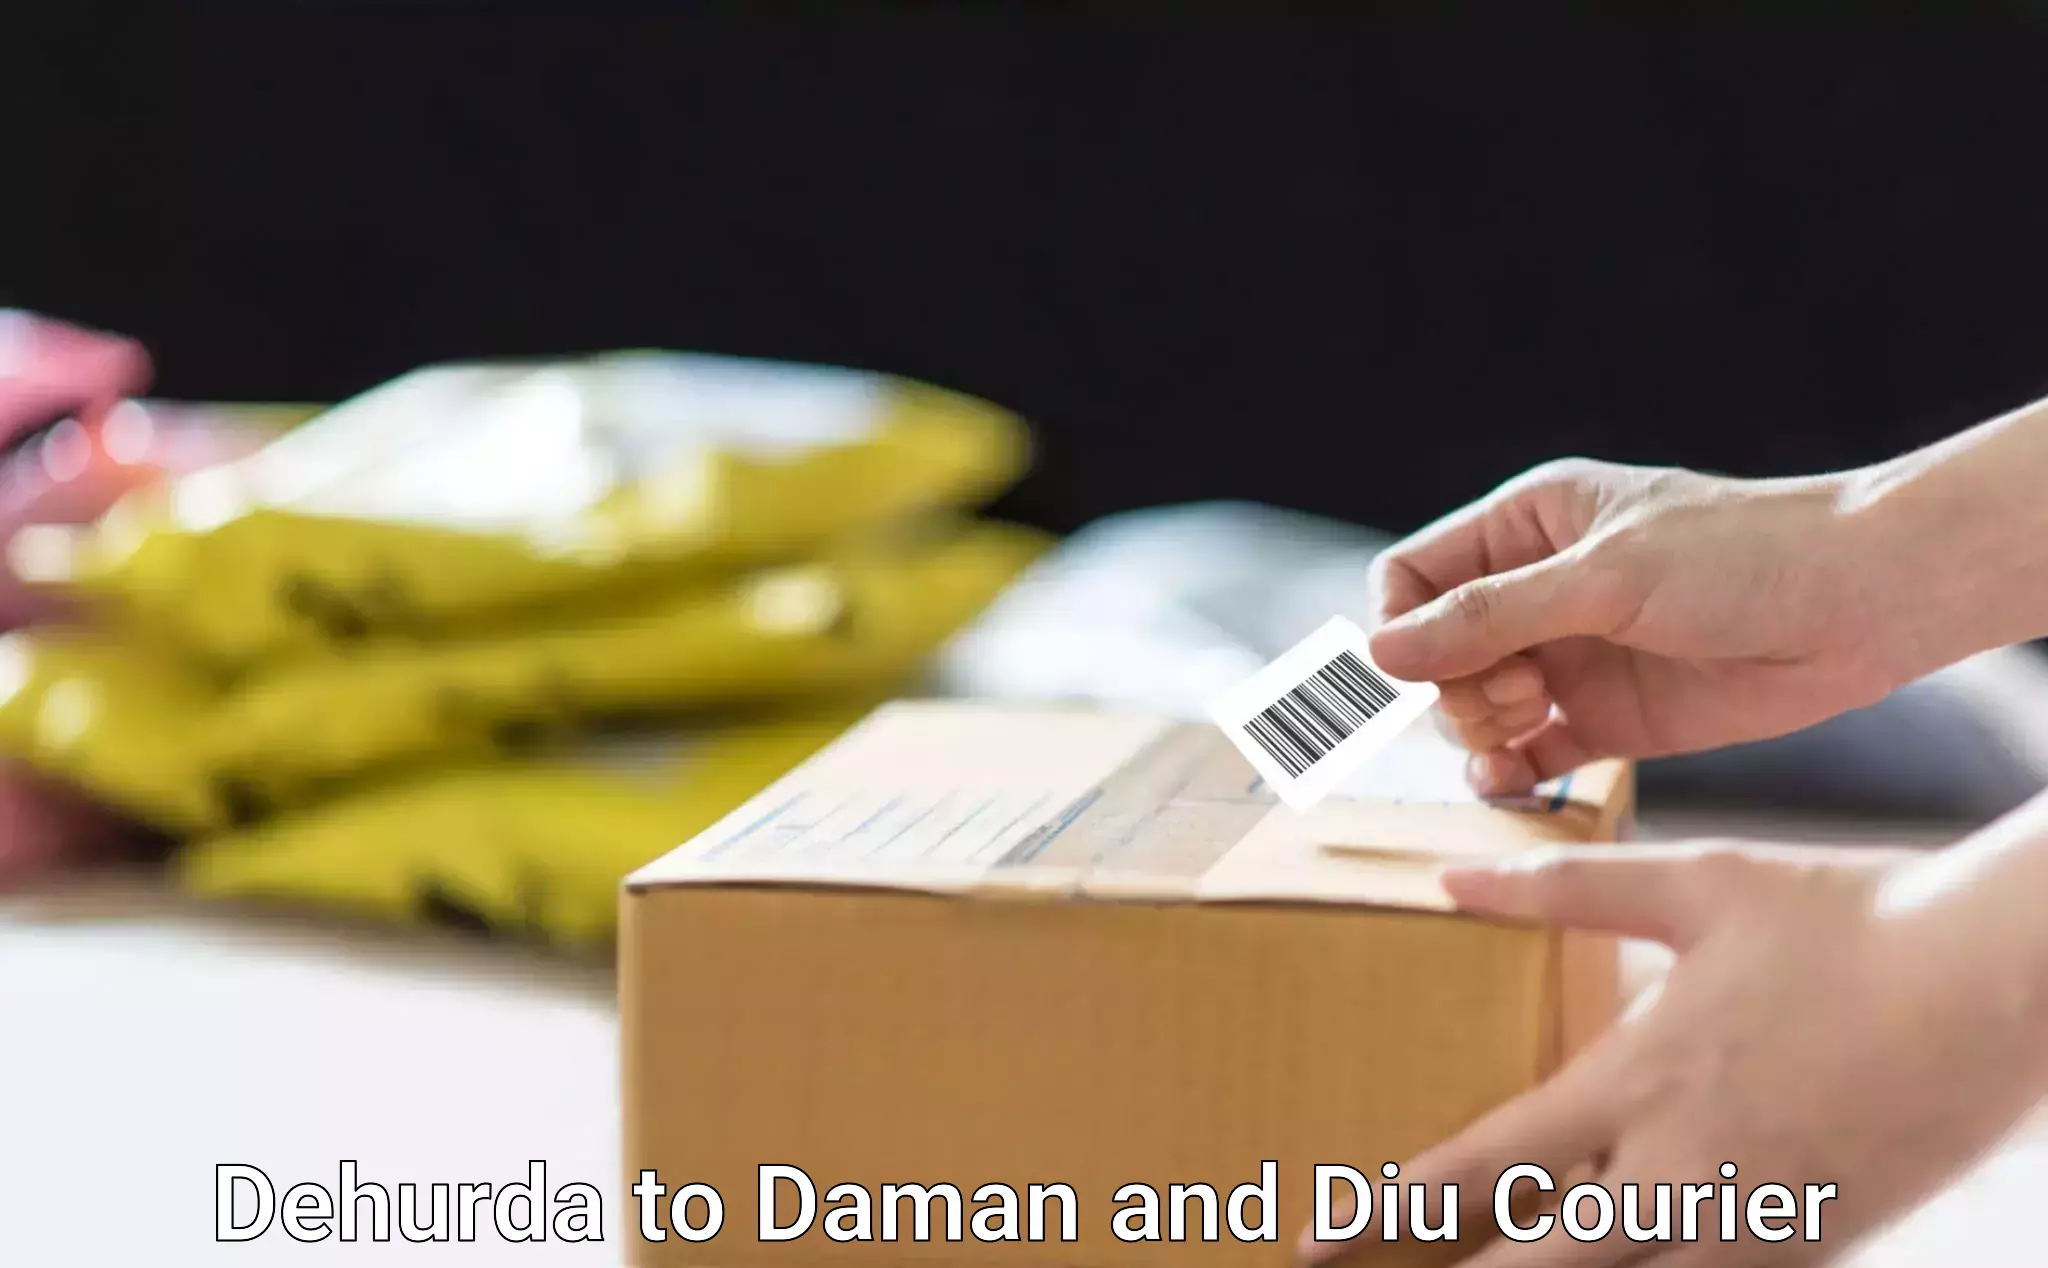 Custom courier packaging Dehurda to Diu